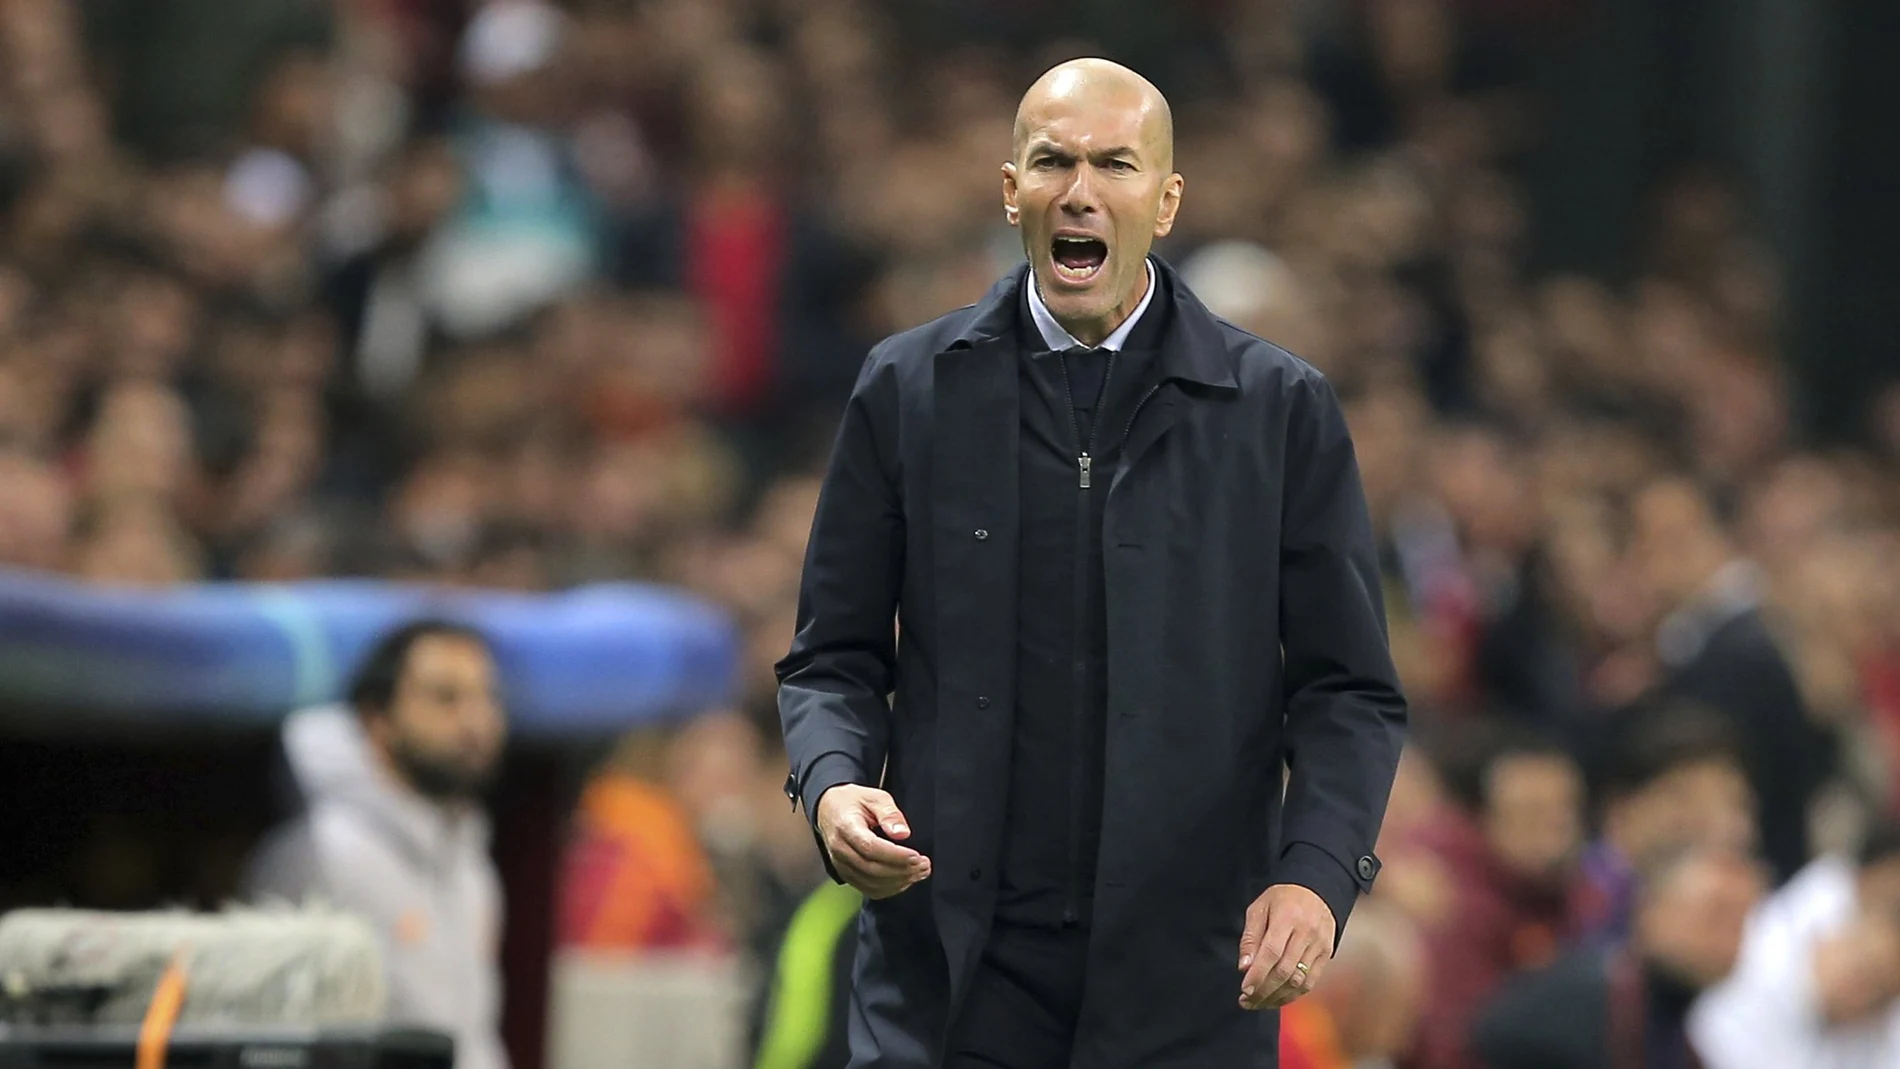 Va a haber una pequeña revolución en el Real Madrid. Tampoco está claro que vaya a seguir Zidane. Lo que él decida